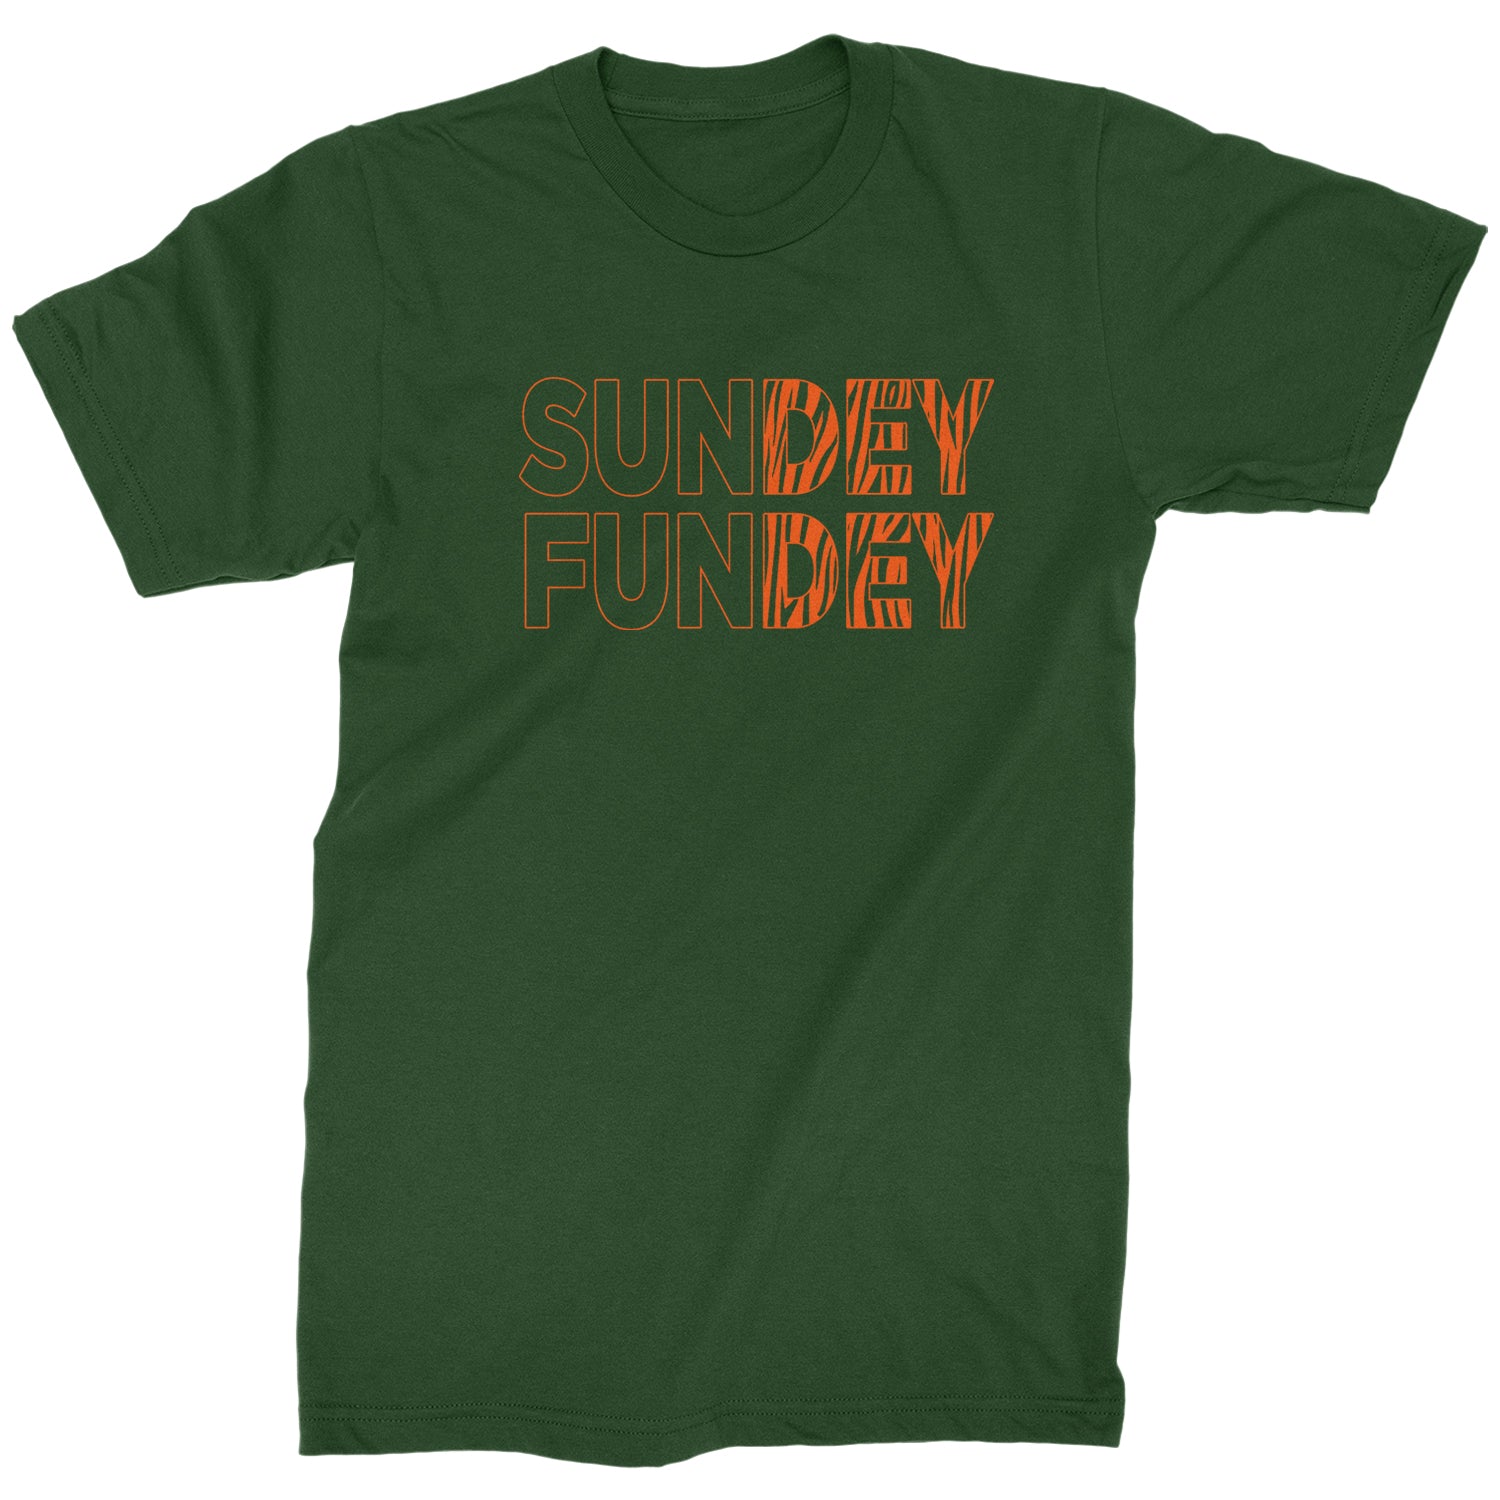 SunDEY FunDEY Sunday Funday Mens T-shirt ball, burrow, dey, foot, football, joe, ohio, sports, who by Expression Tees